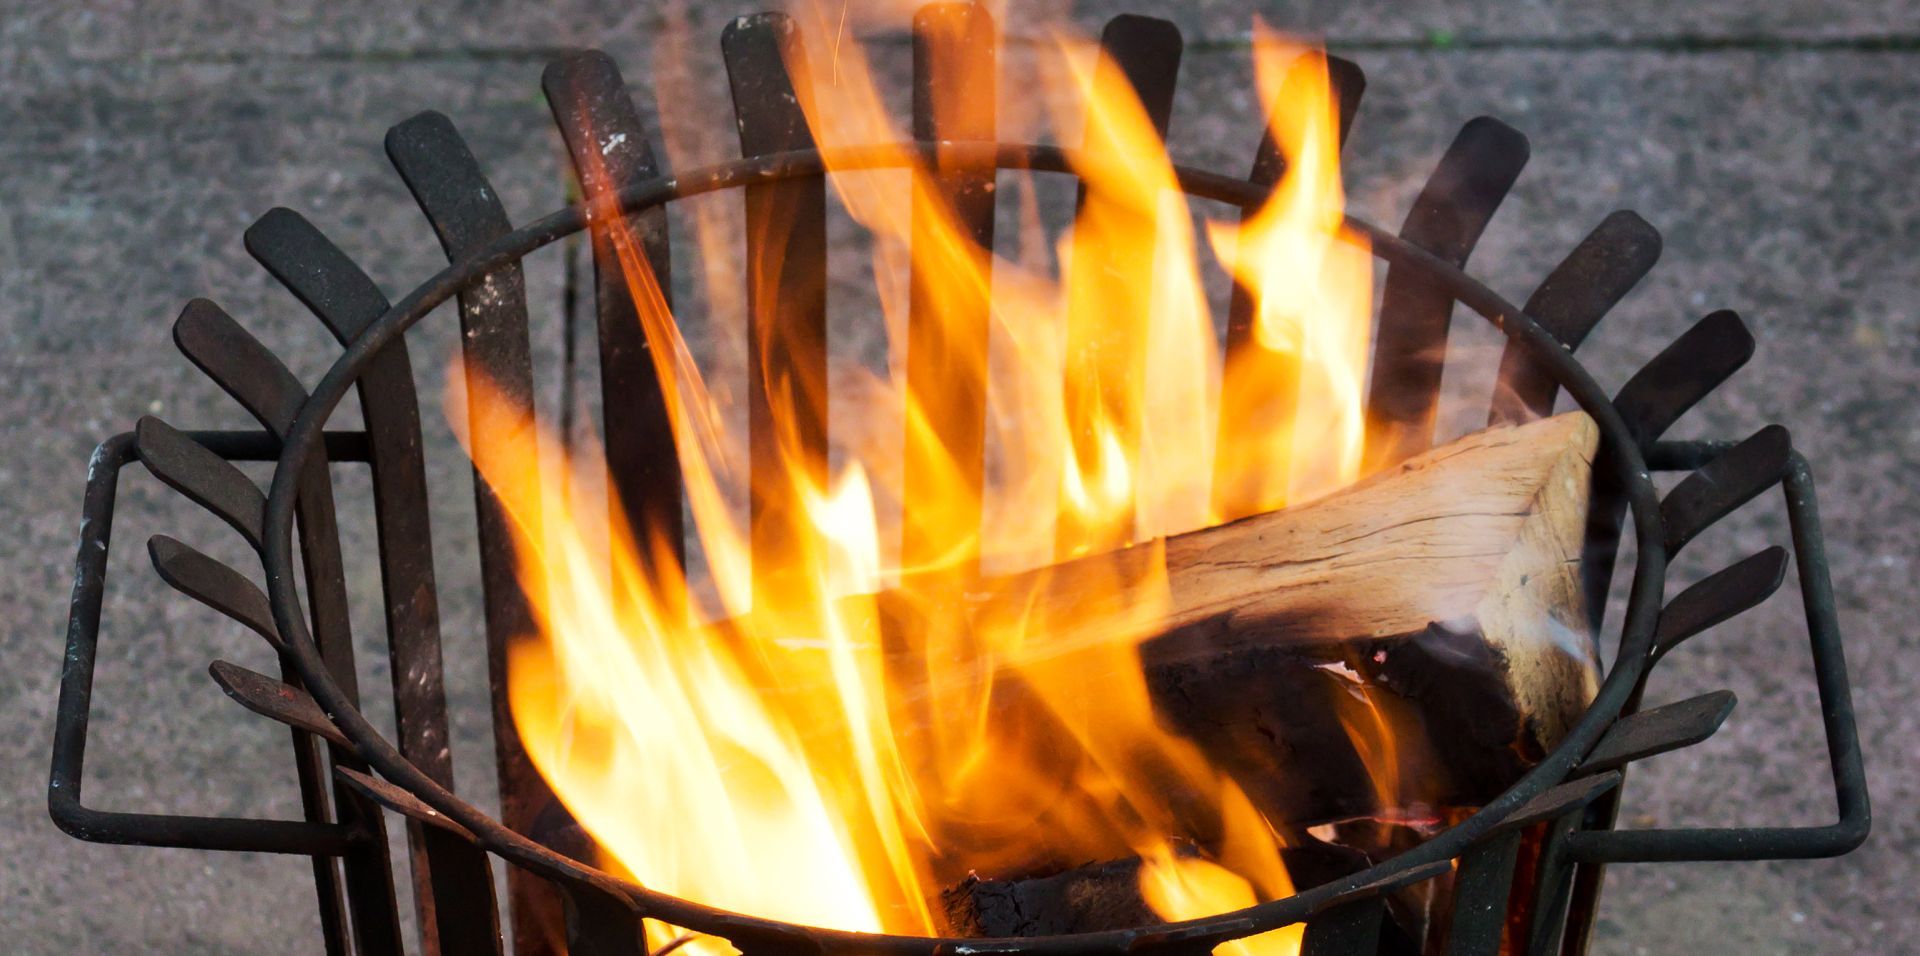 Vuurkorf met brandend hout